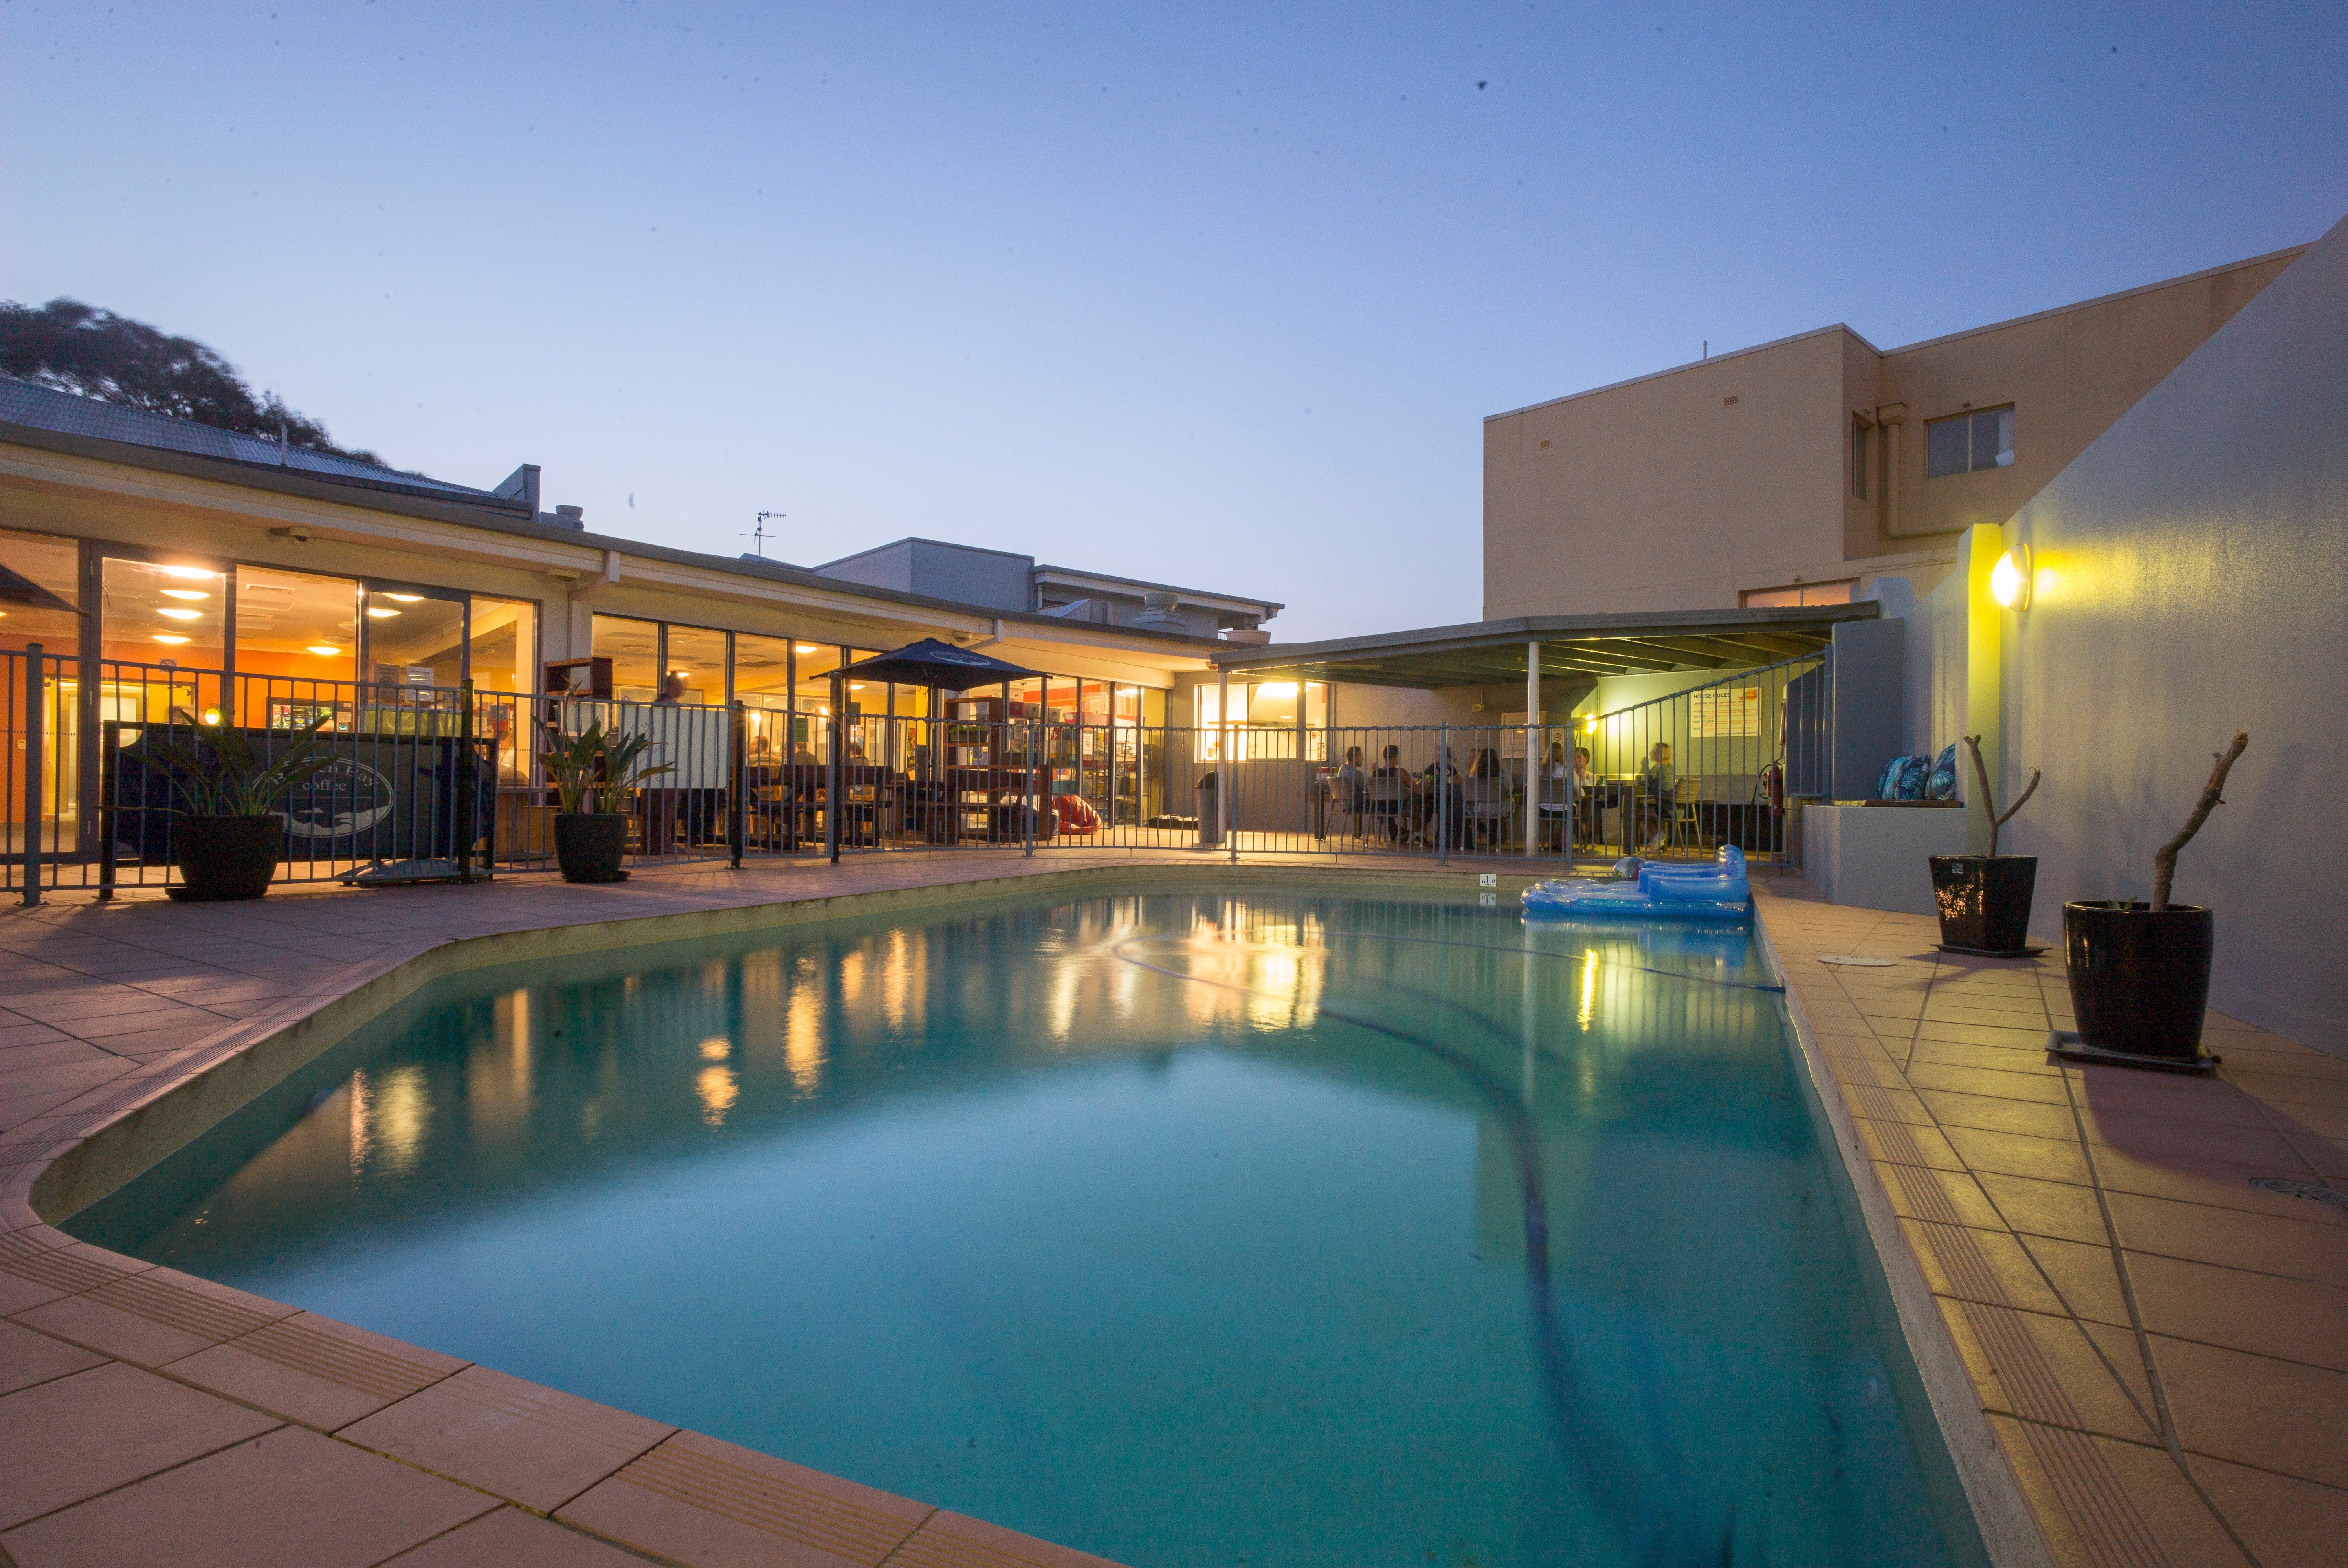 Sydney Beachouse YHA - Collaroy - Accommodation Resorts